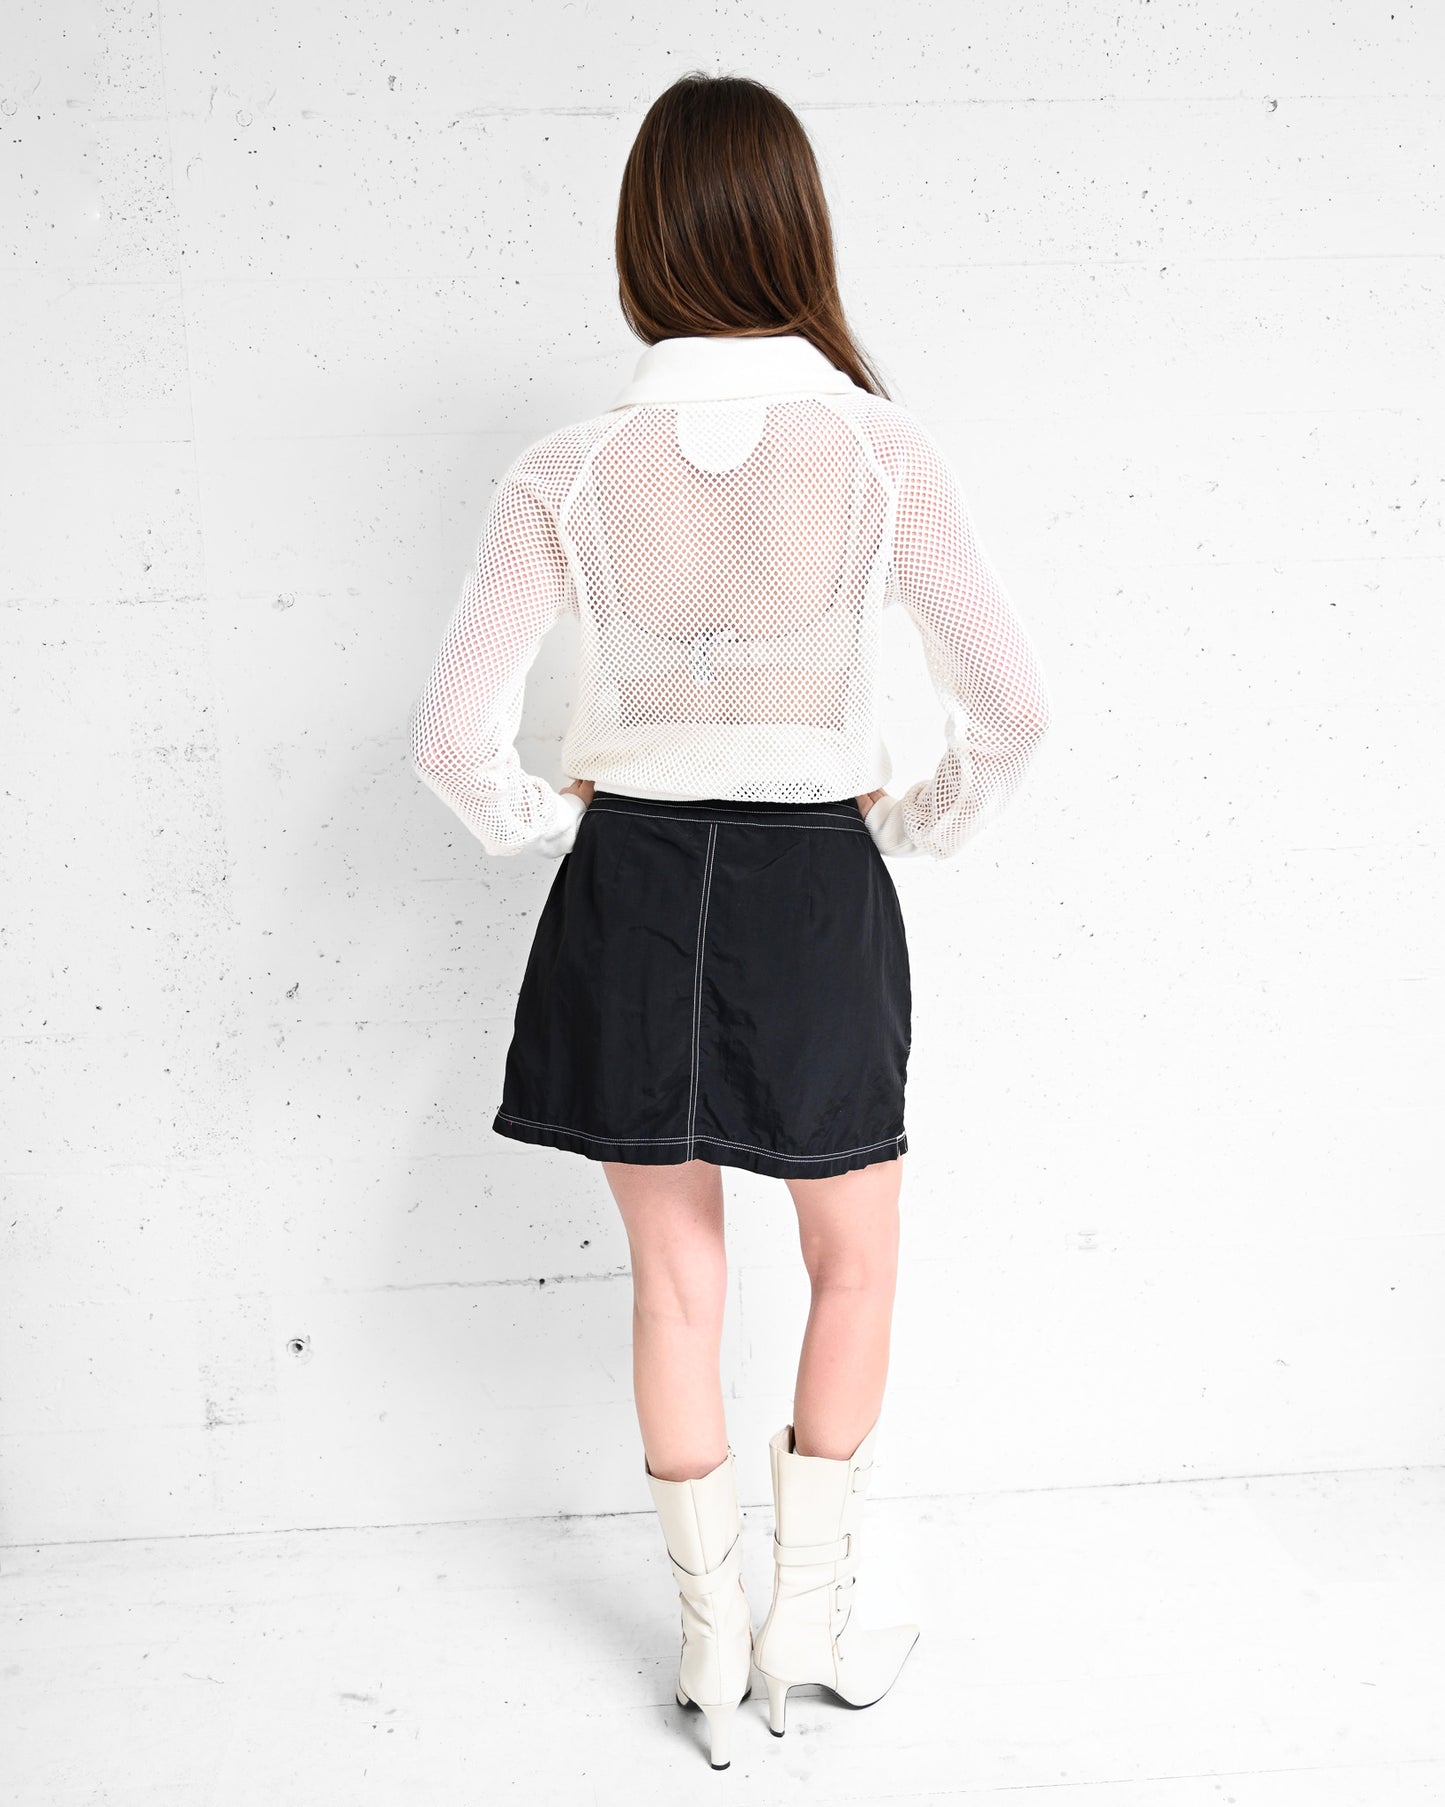 Black Nylon Drawstring Mini Skirt (M-L)